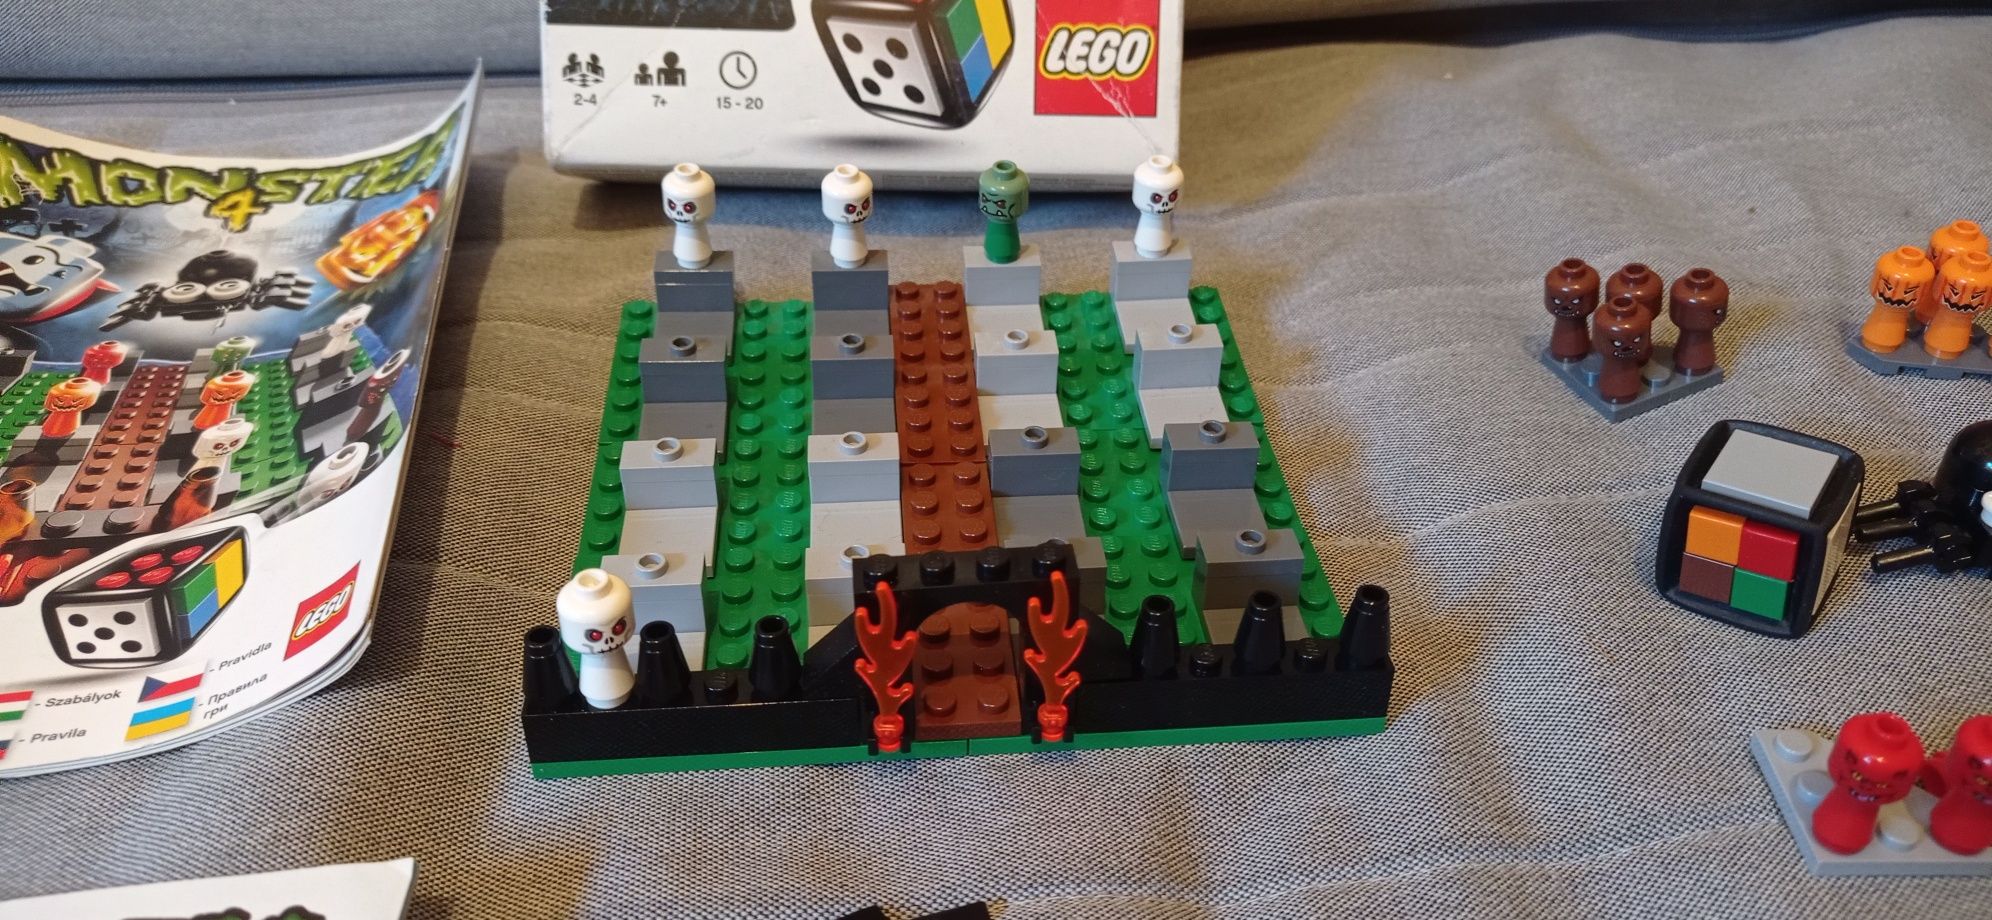 LEGO 3837 gra monster 4